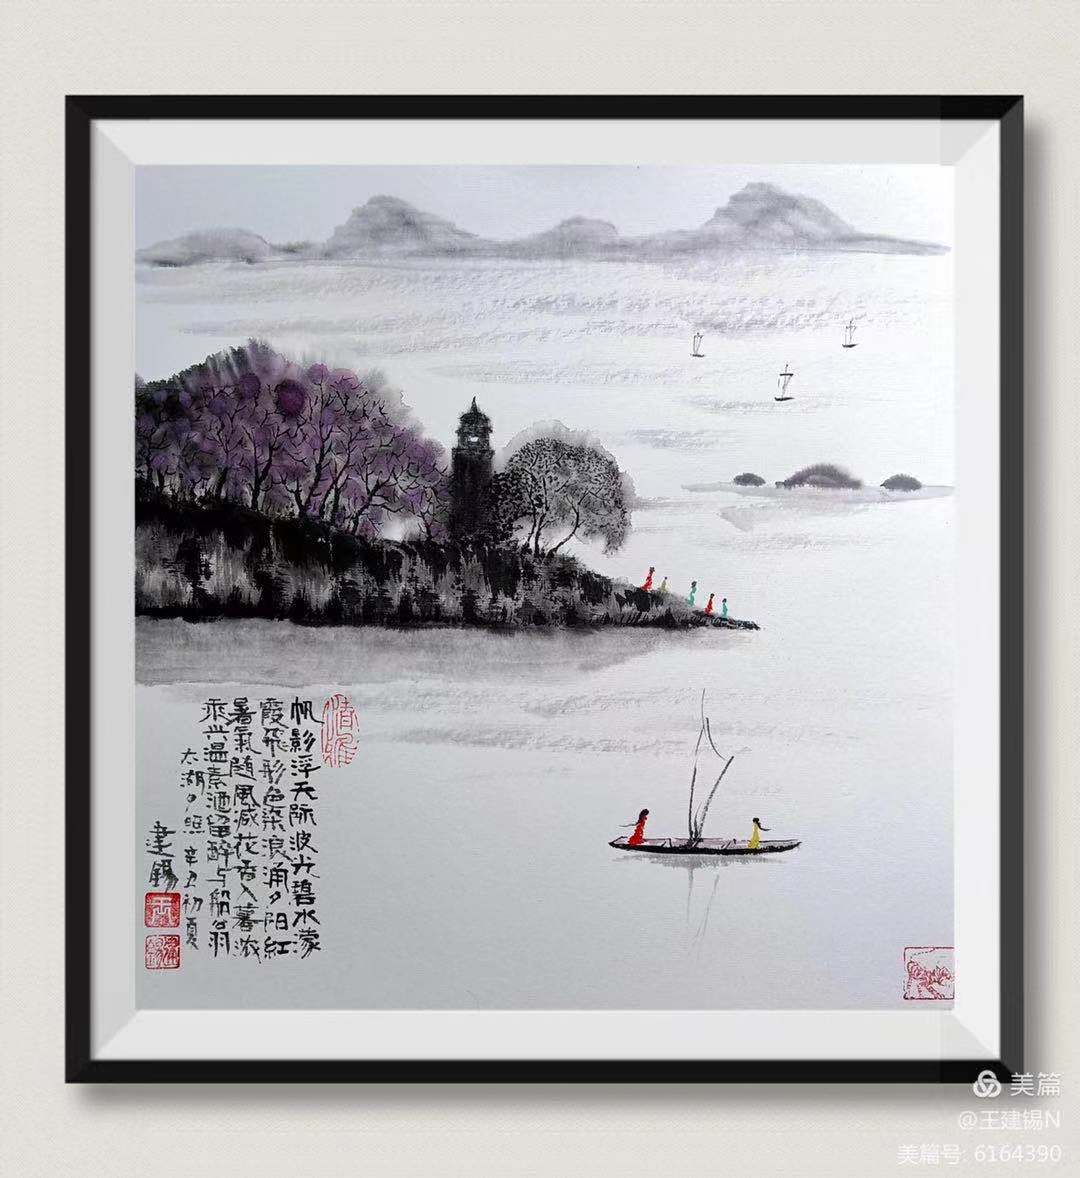 中国大众文化学会名人书画艺术发展委员会——王建锡